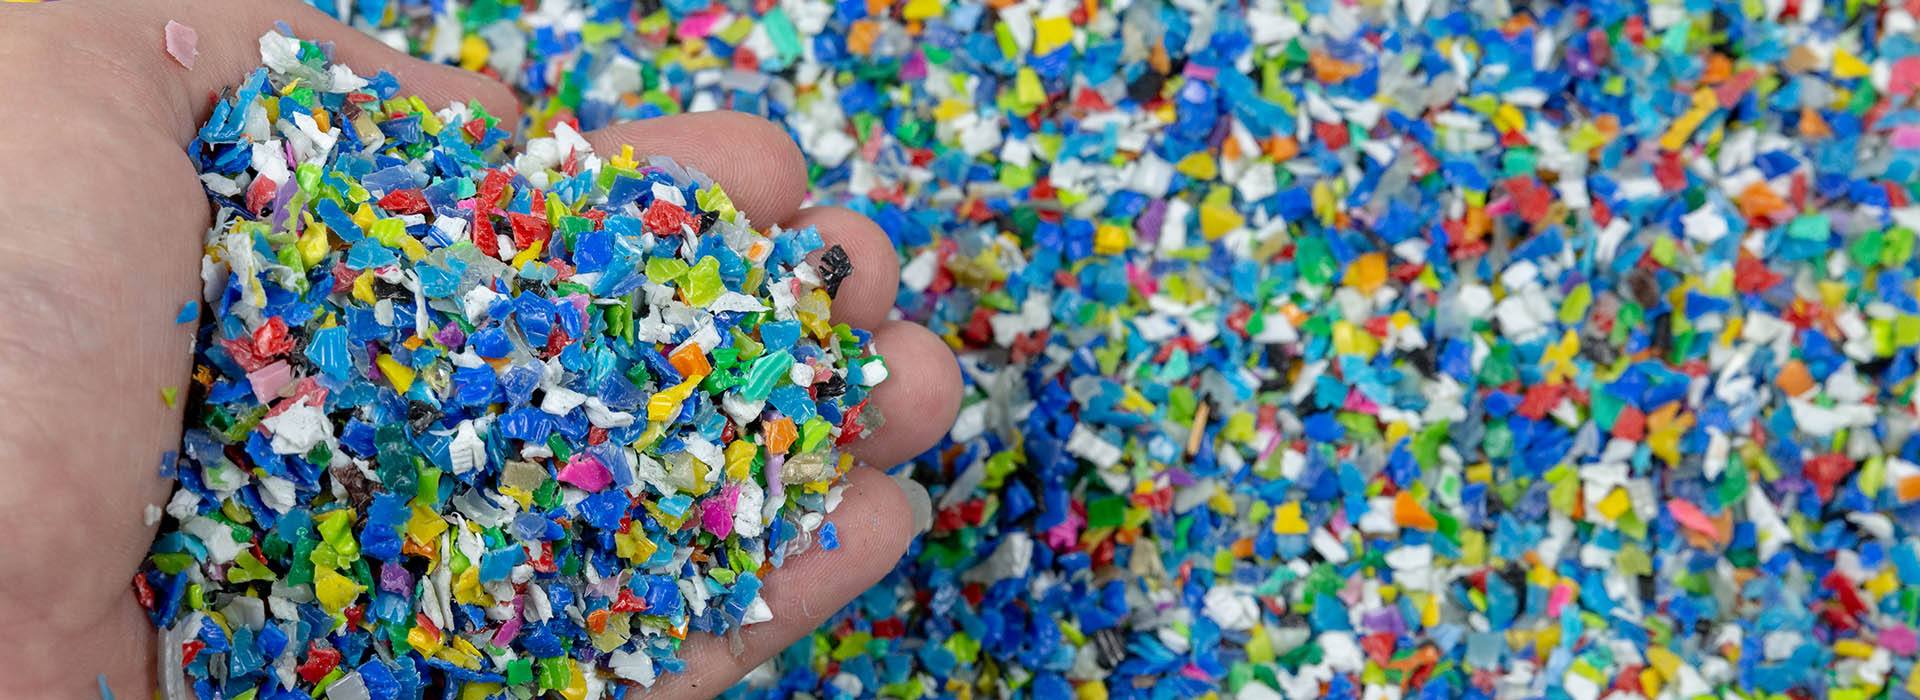 INVITO AL WEBINAR Panoramica su problemi e soluzioni nella lavorazione delle materie plastiche post-consumo